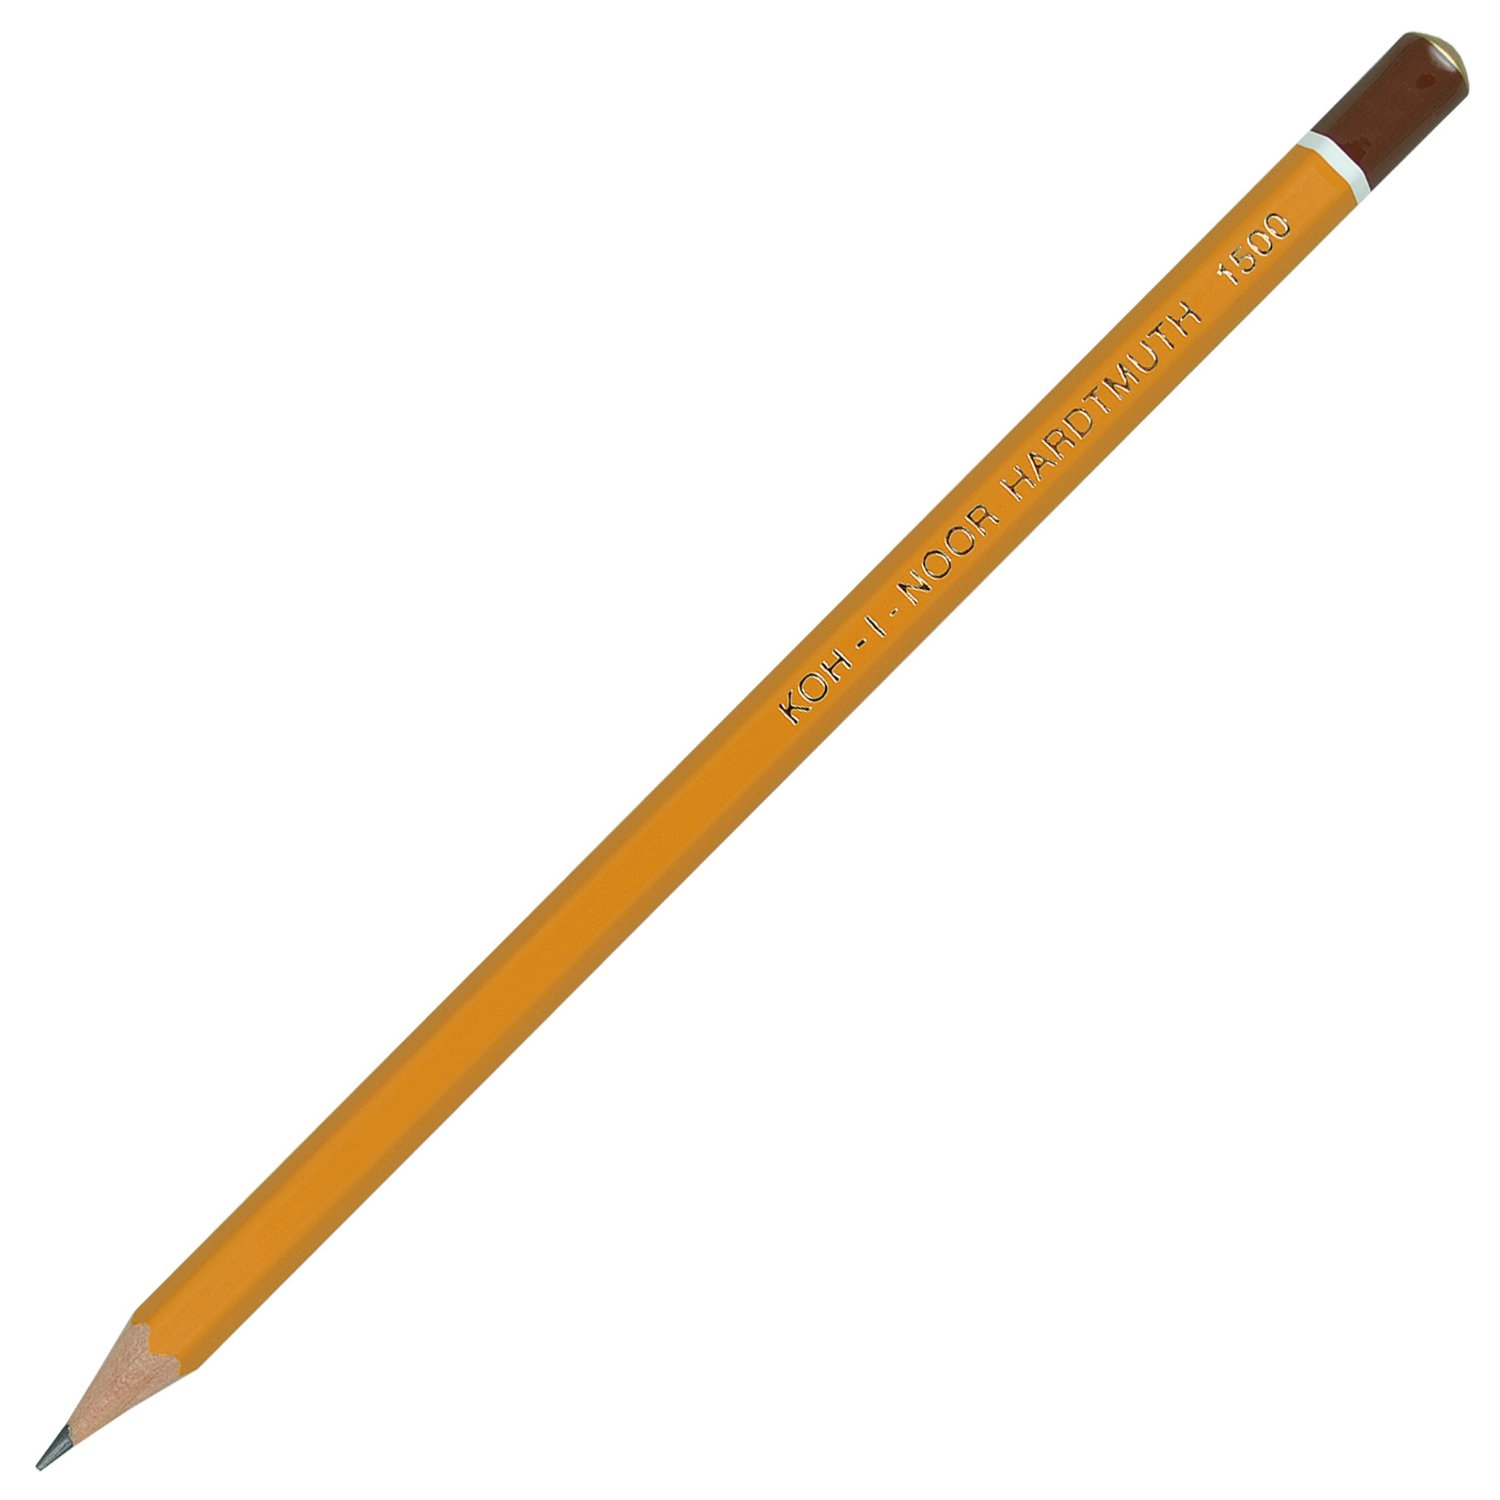 Олівець Koh-I-Noor графітний‚ 5Н, загострений, ціна за 1 олівець, упаковка 12 штук 1500.5H